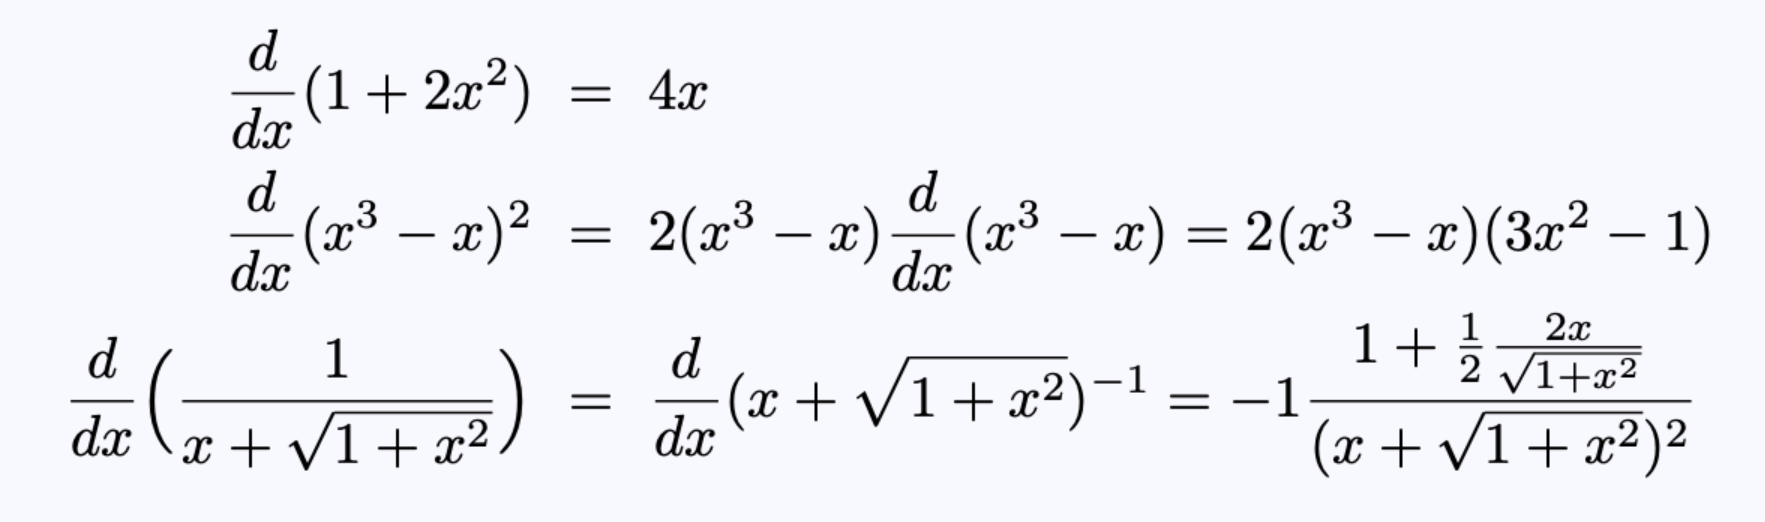 理查德·费曼如何求复杂函数的导数的？非常聪明的求导技巧